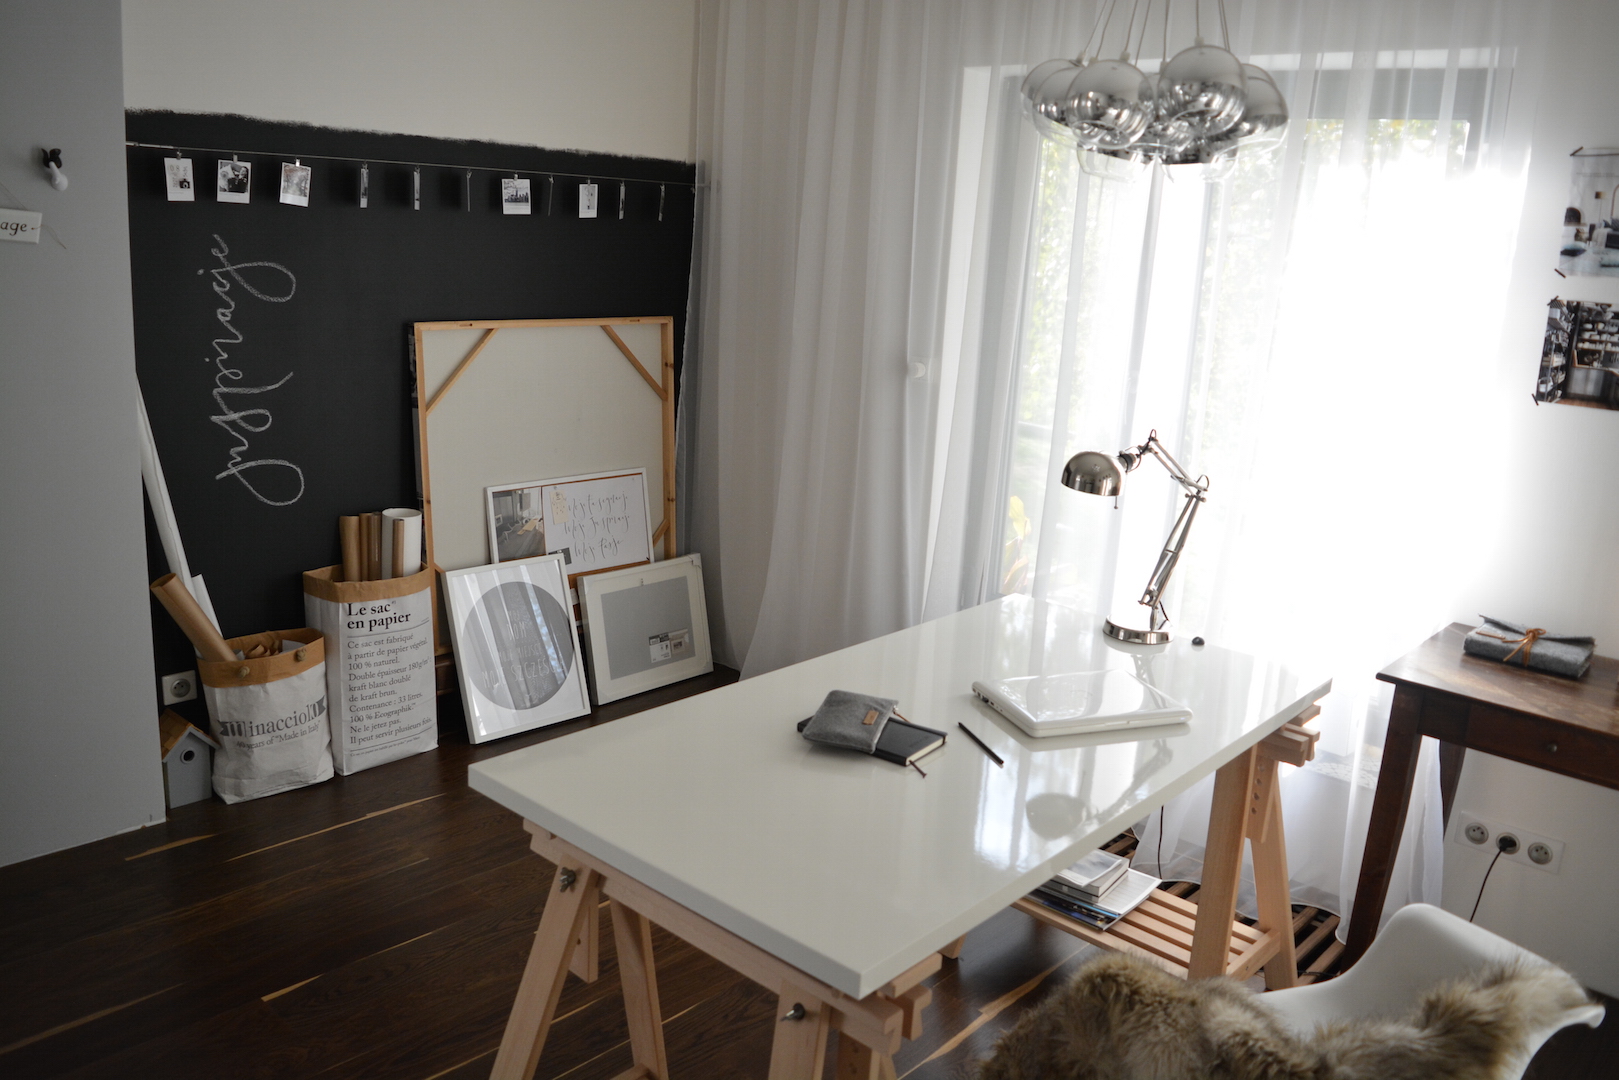 ściana tablicowa, farba tablicowa, pracownia, biurko ikea, biurko na koziołkach, domowa pracownia, ściana inspiracji